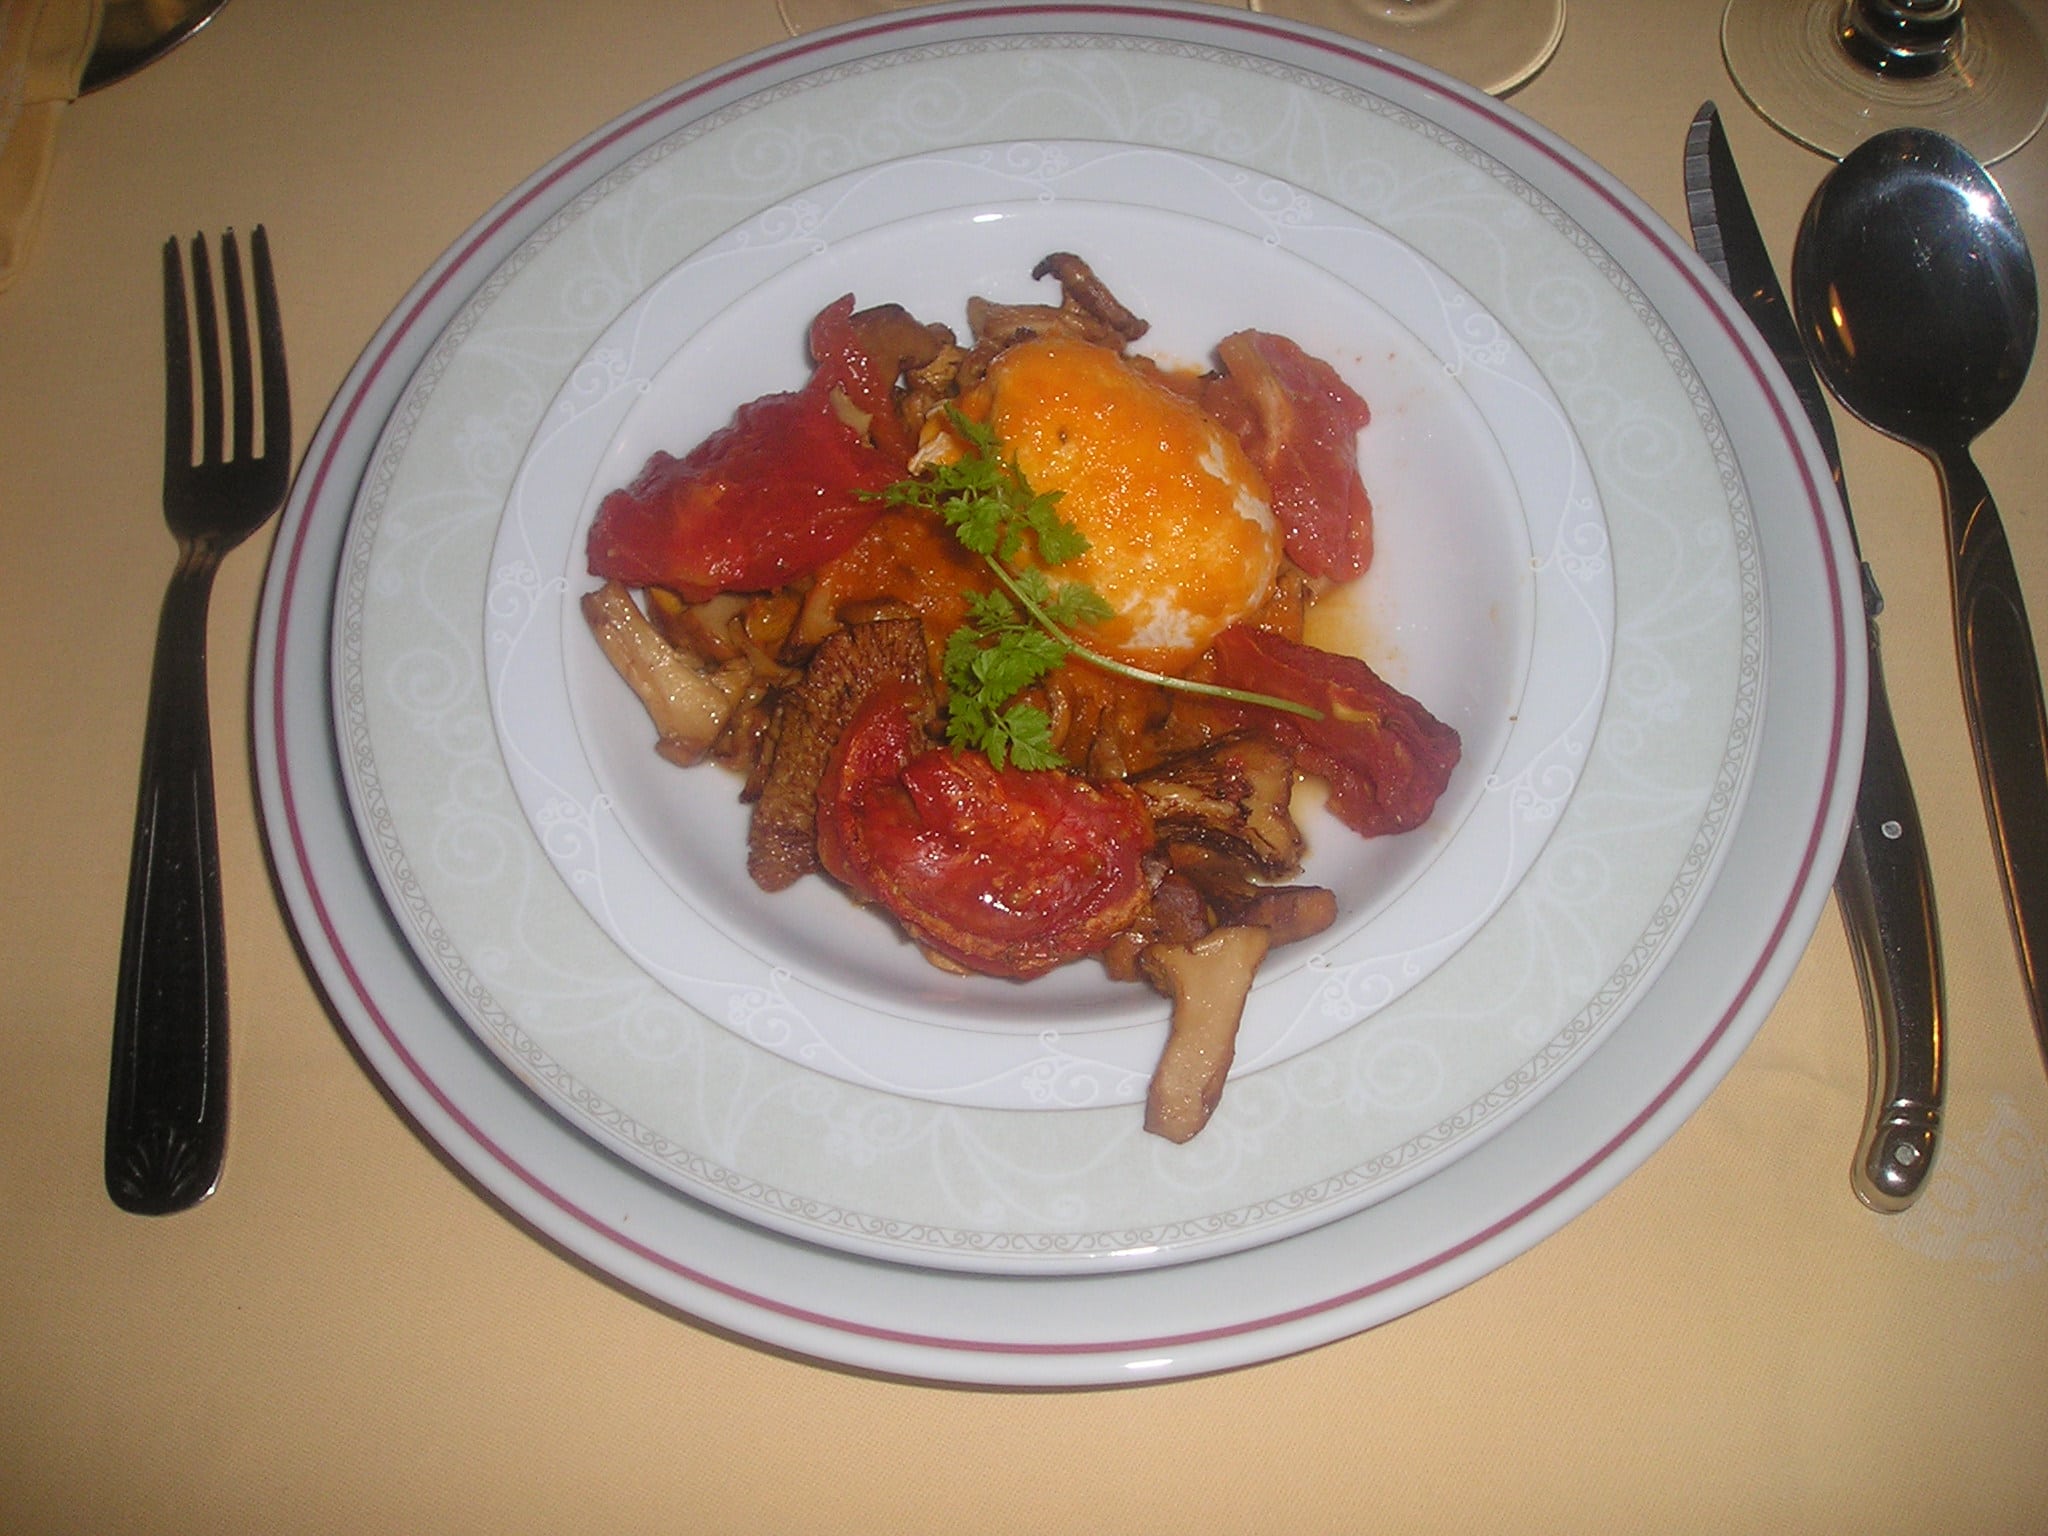 La recette du samedi: des œufs pochés aux girolles et tomates confites